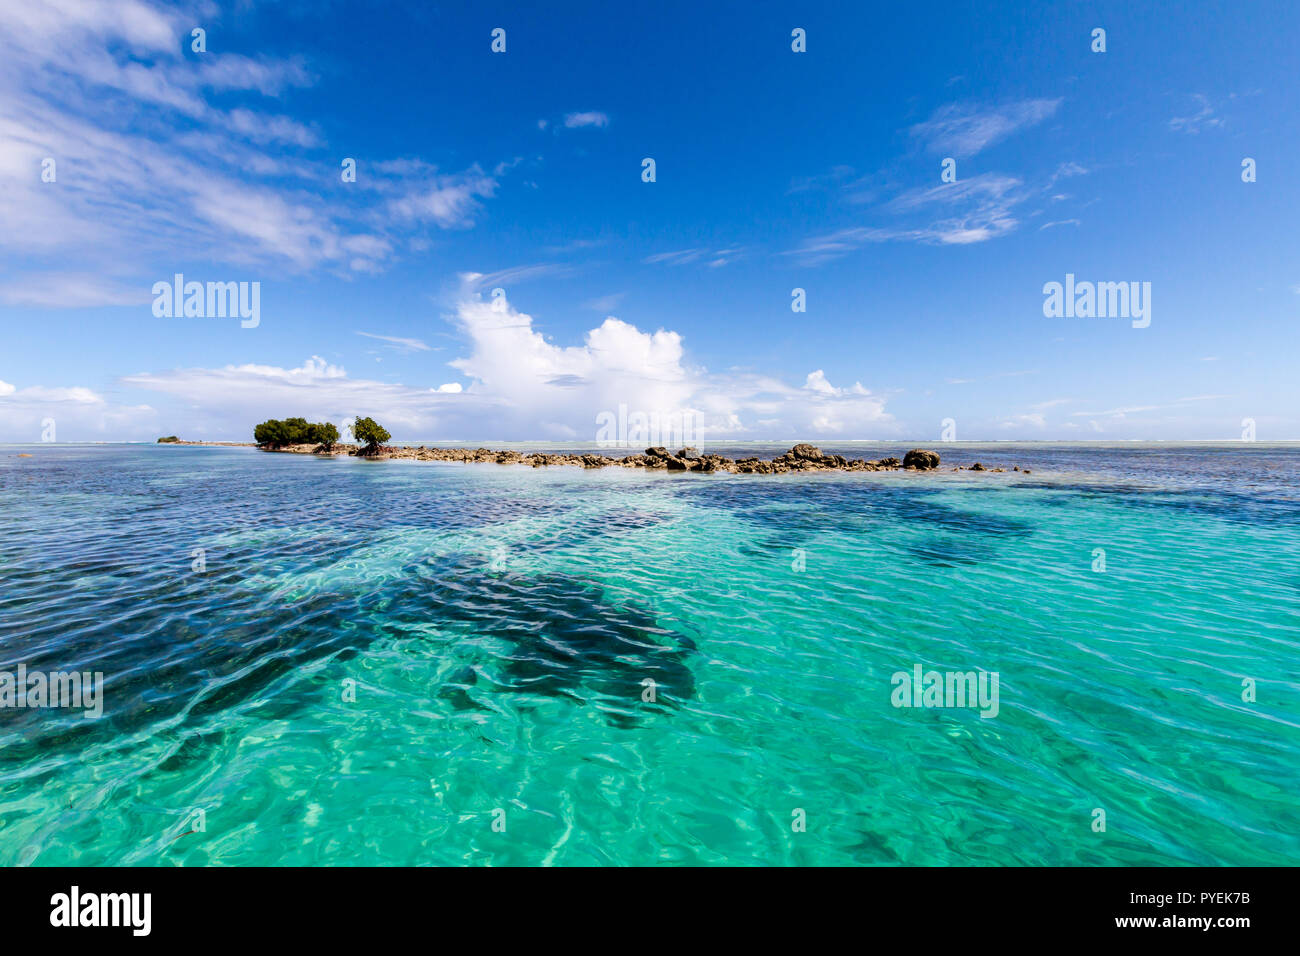 Azur lagon bleu turquoise, corail, petite île inhabitée reef motu, rochers dangereux, certains arbres, les mangroves de l'île de Pohnpei, Micronésie, Océanie Banque D'Images